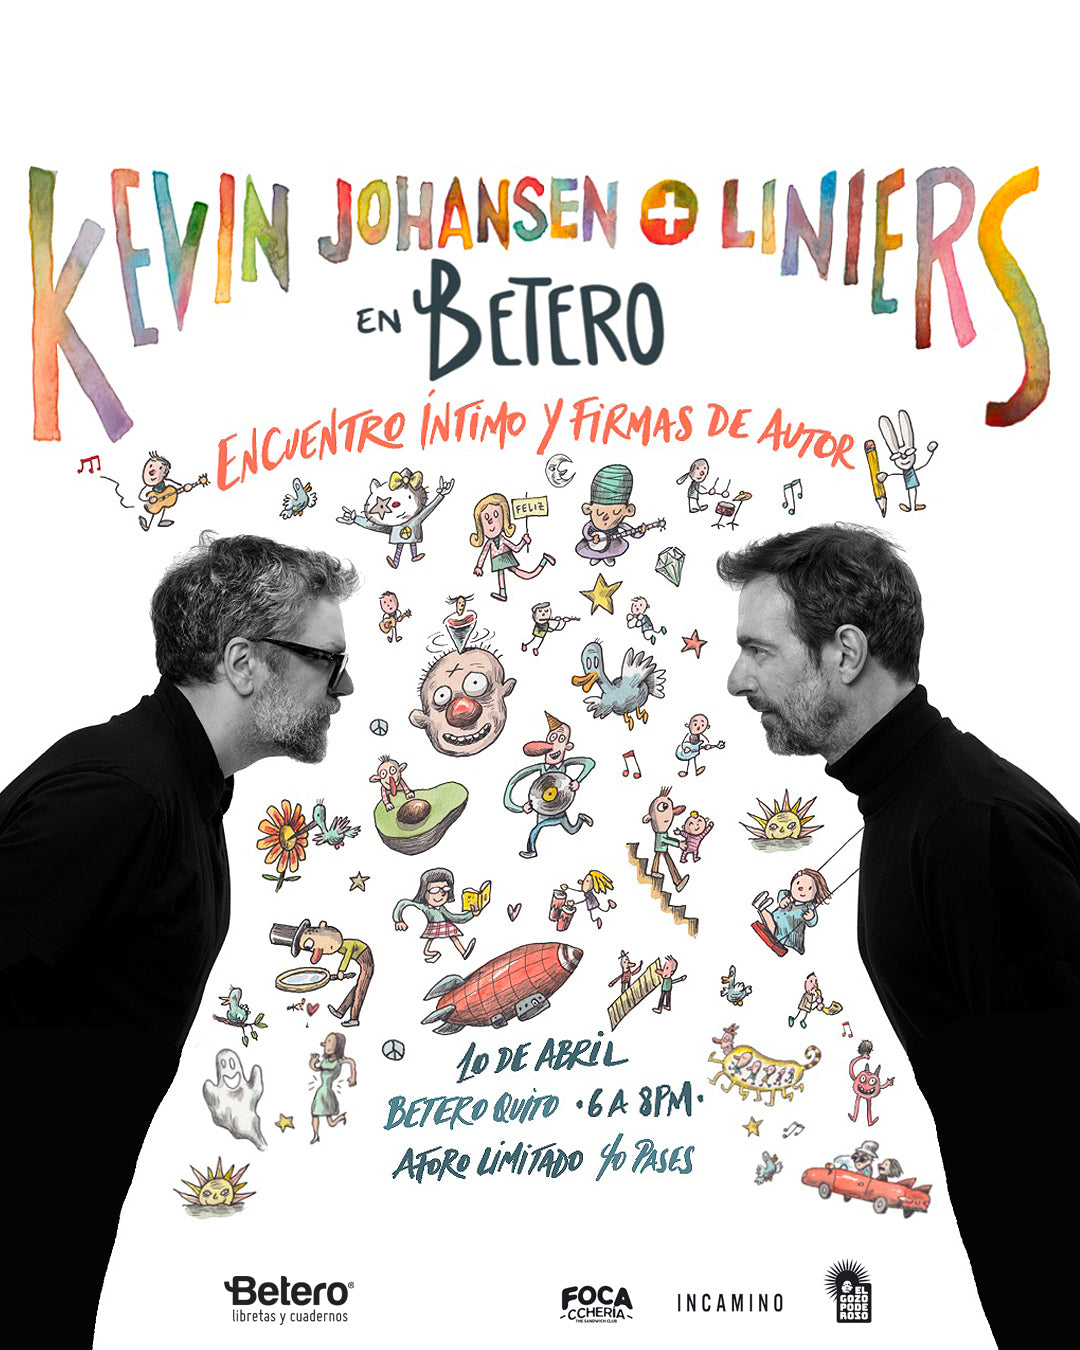 Un encuentro íntimo junto a Kevin Johansen y Liniers en Betero